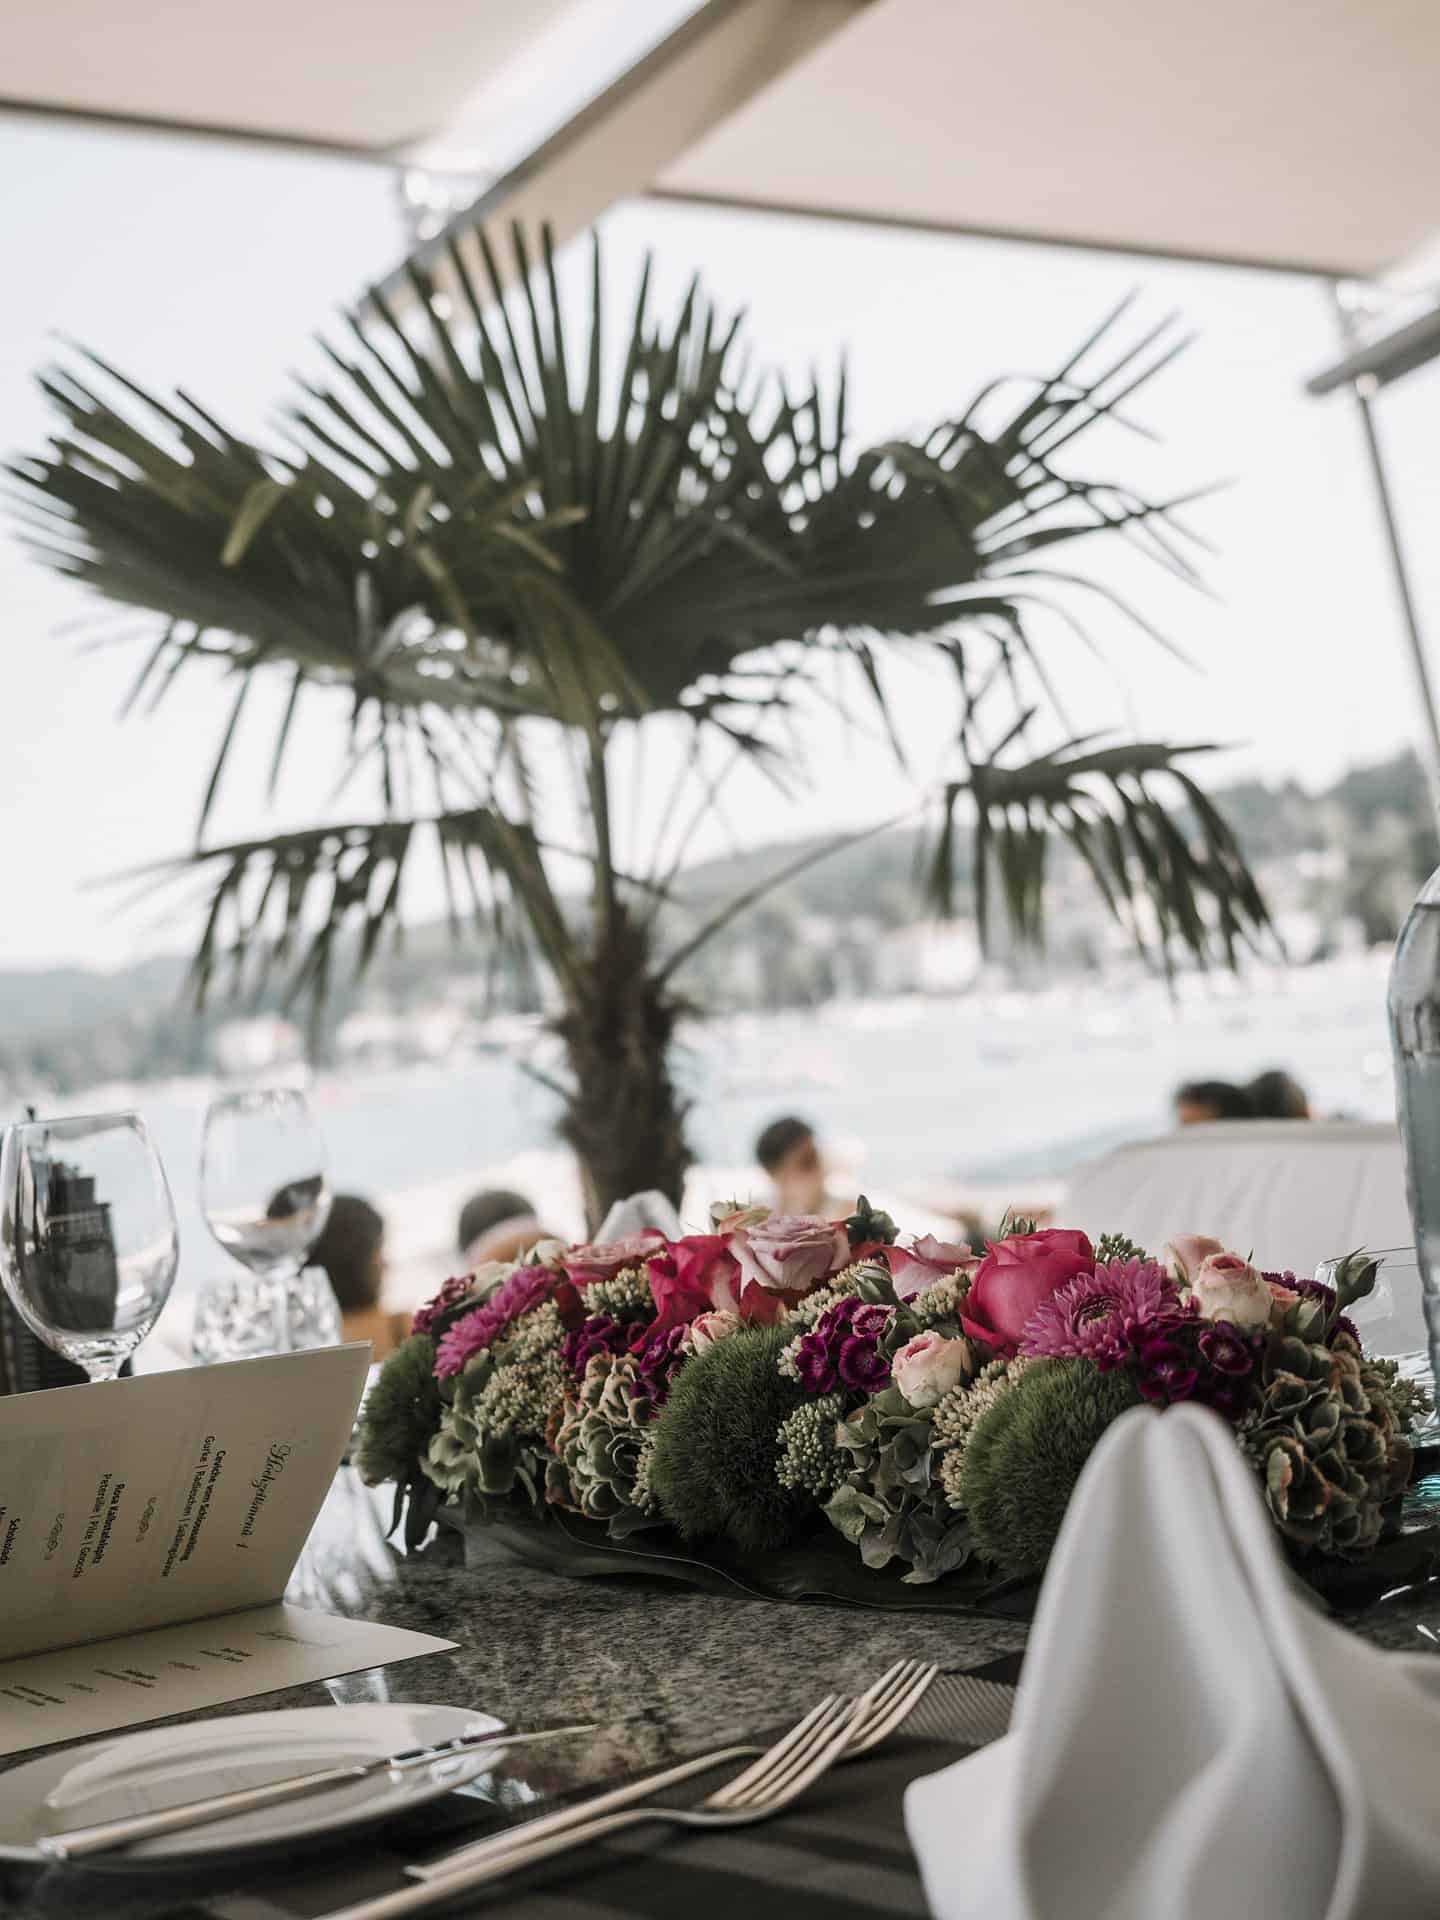 Ein gedeckter Tisch mit Blumen und einer Palme.